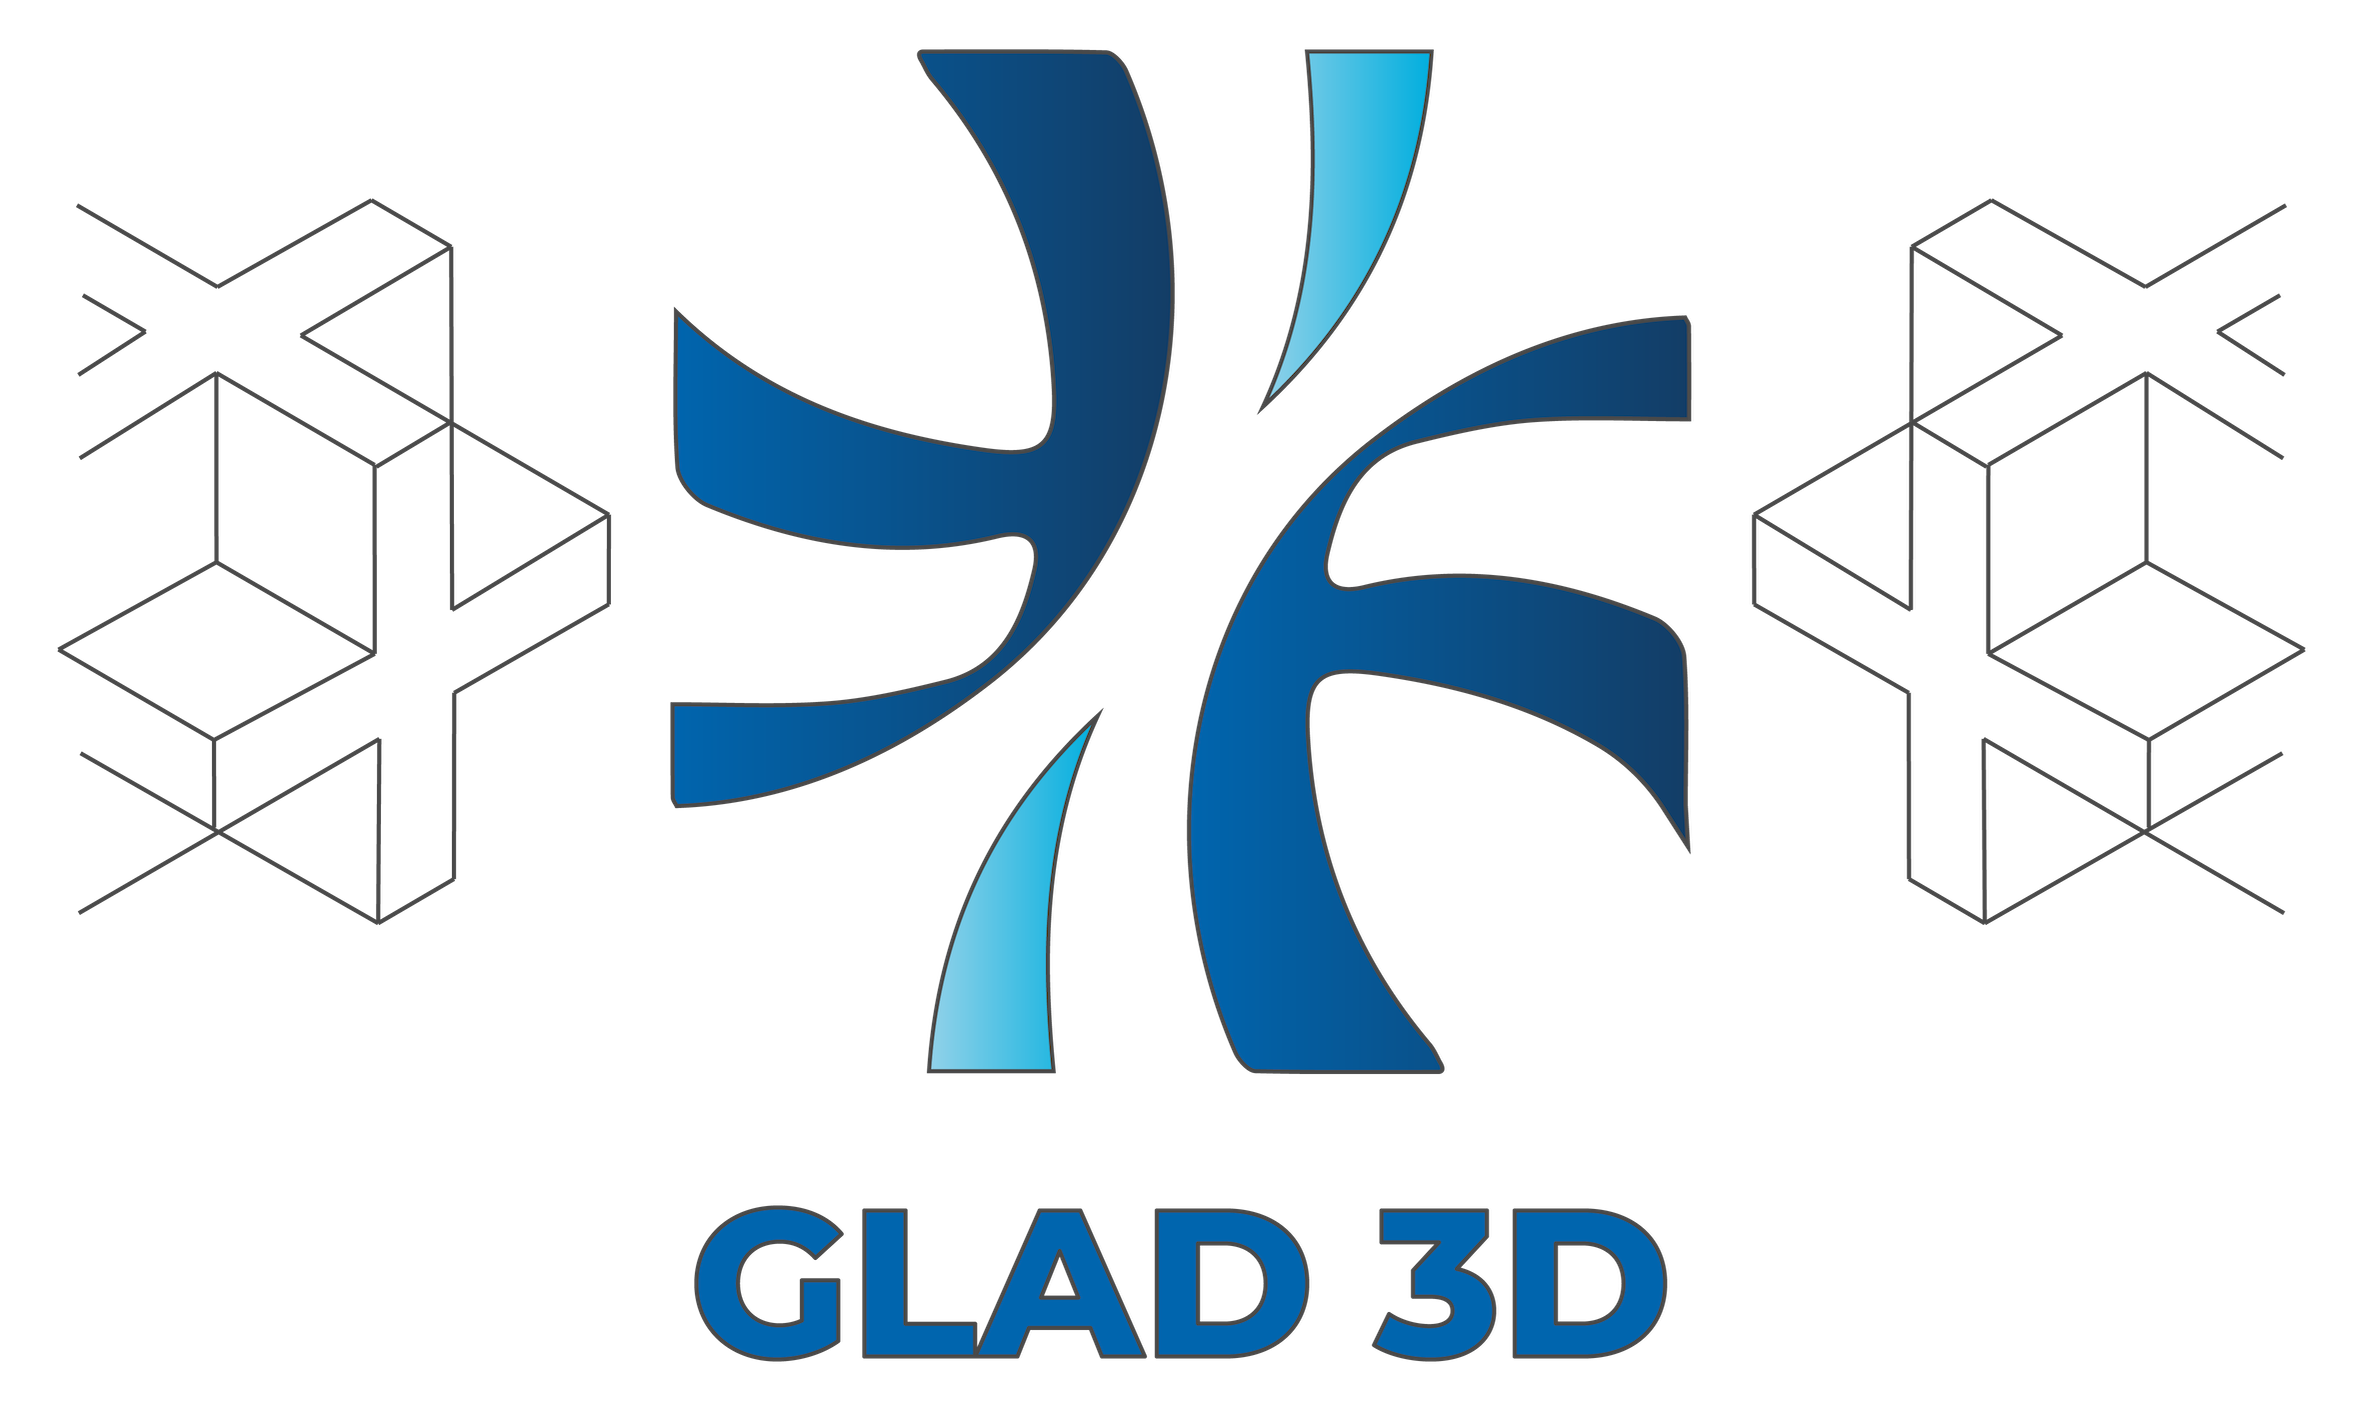 Glad 3D